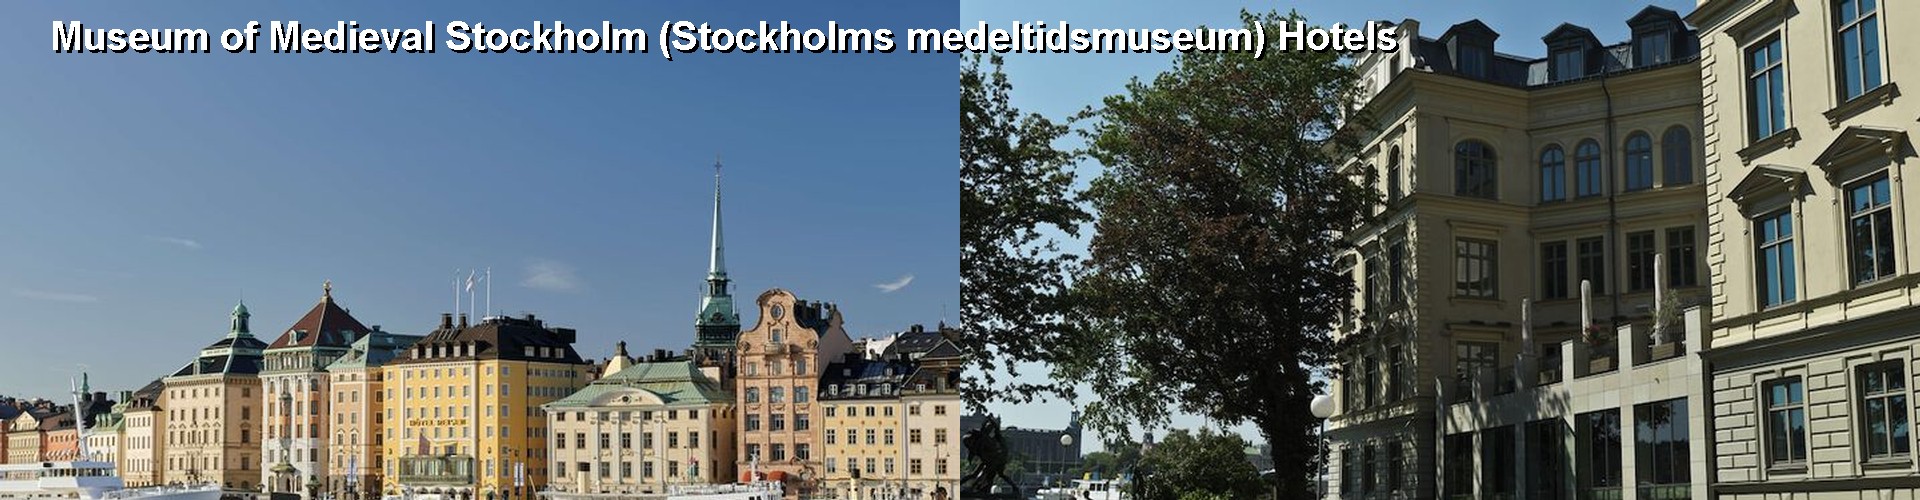 5 Best Hotels near Museum of Medieval Stockholm (Stockholms medeltidsmuseum)